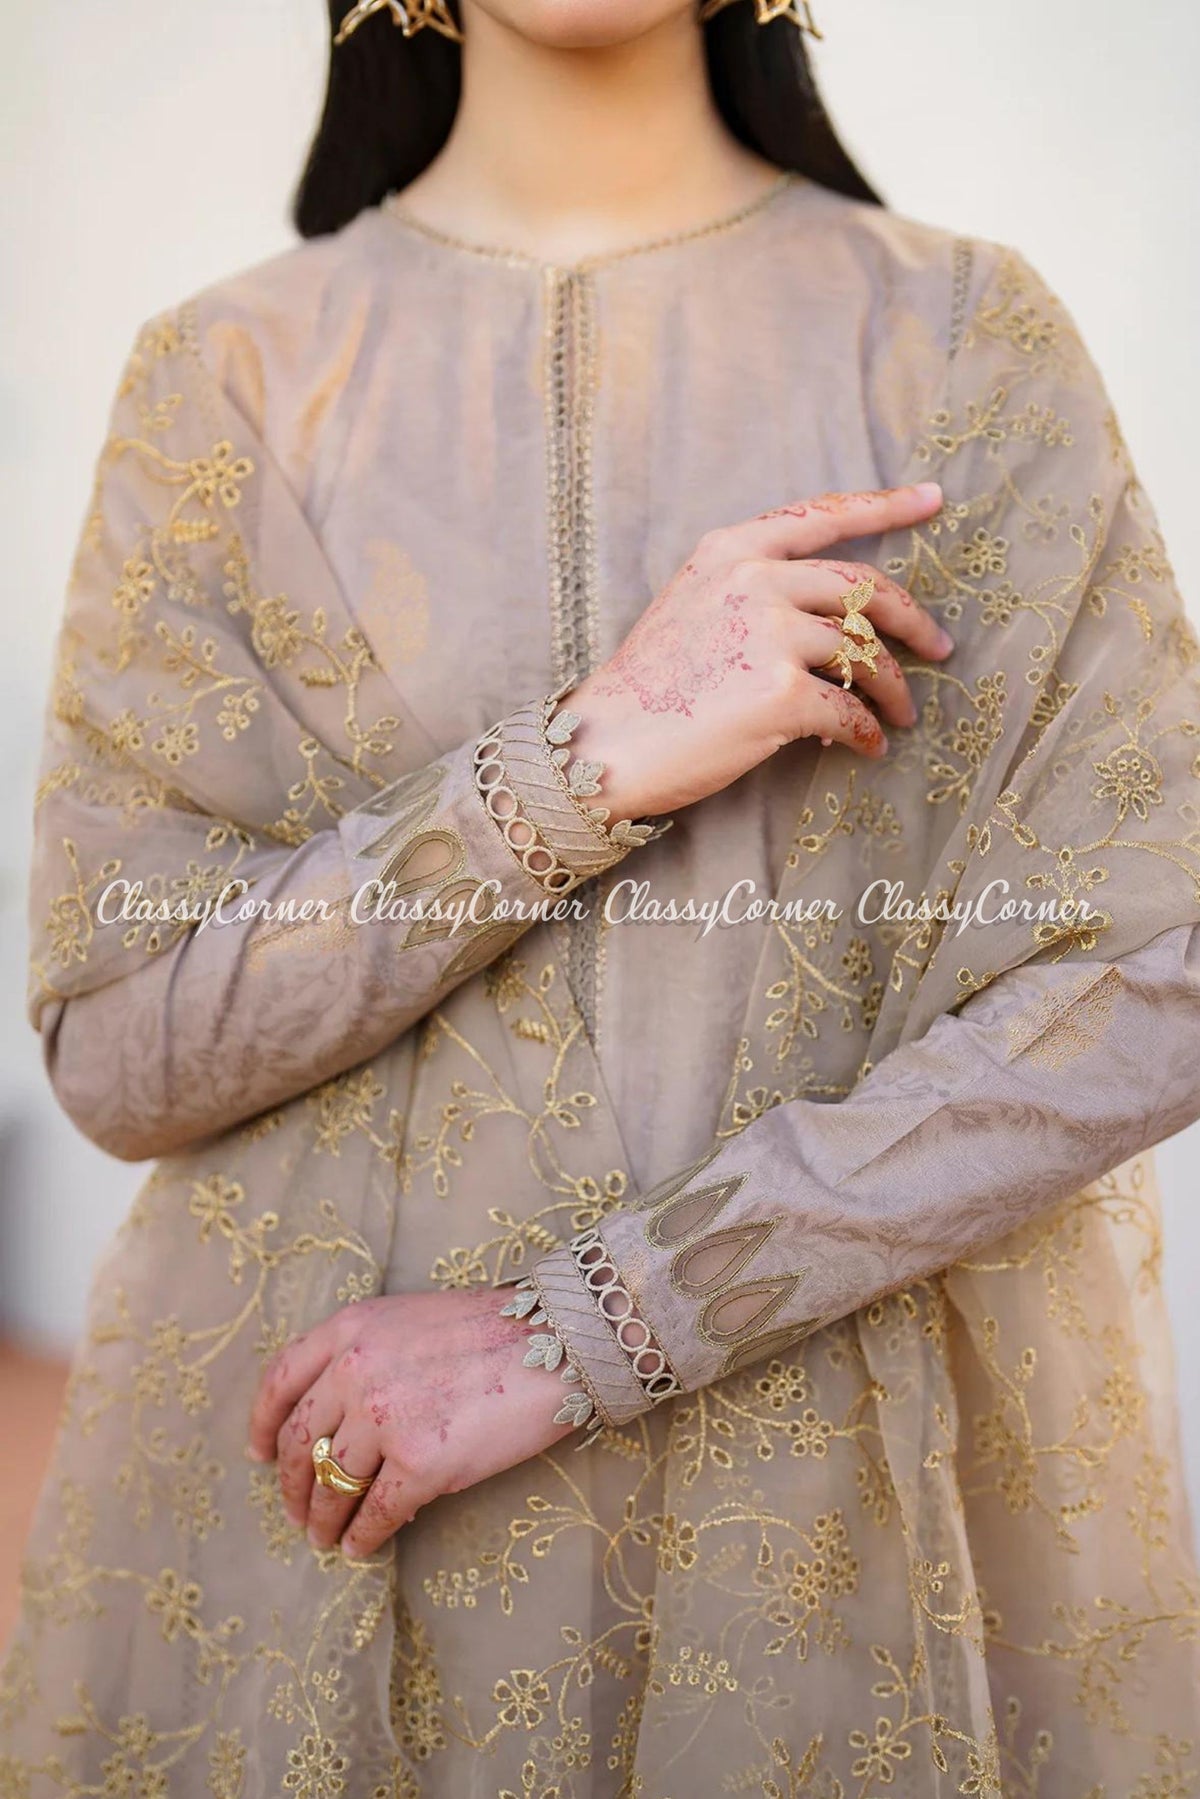 fancy dress for pakistani wedding